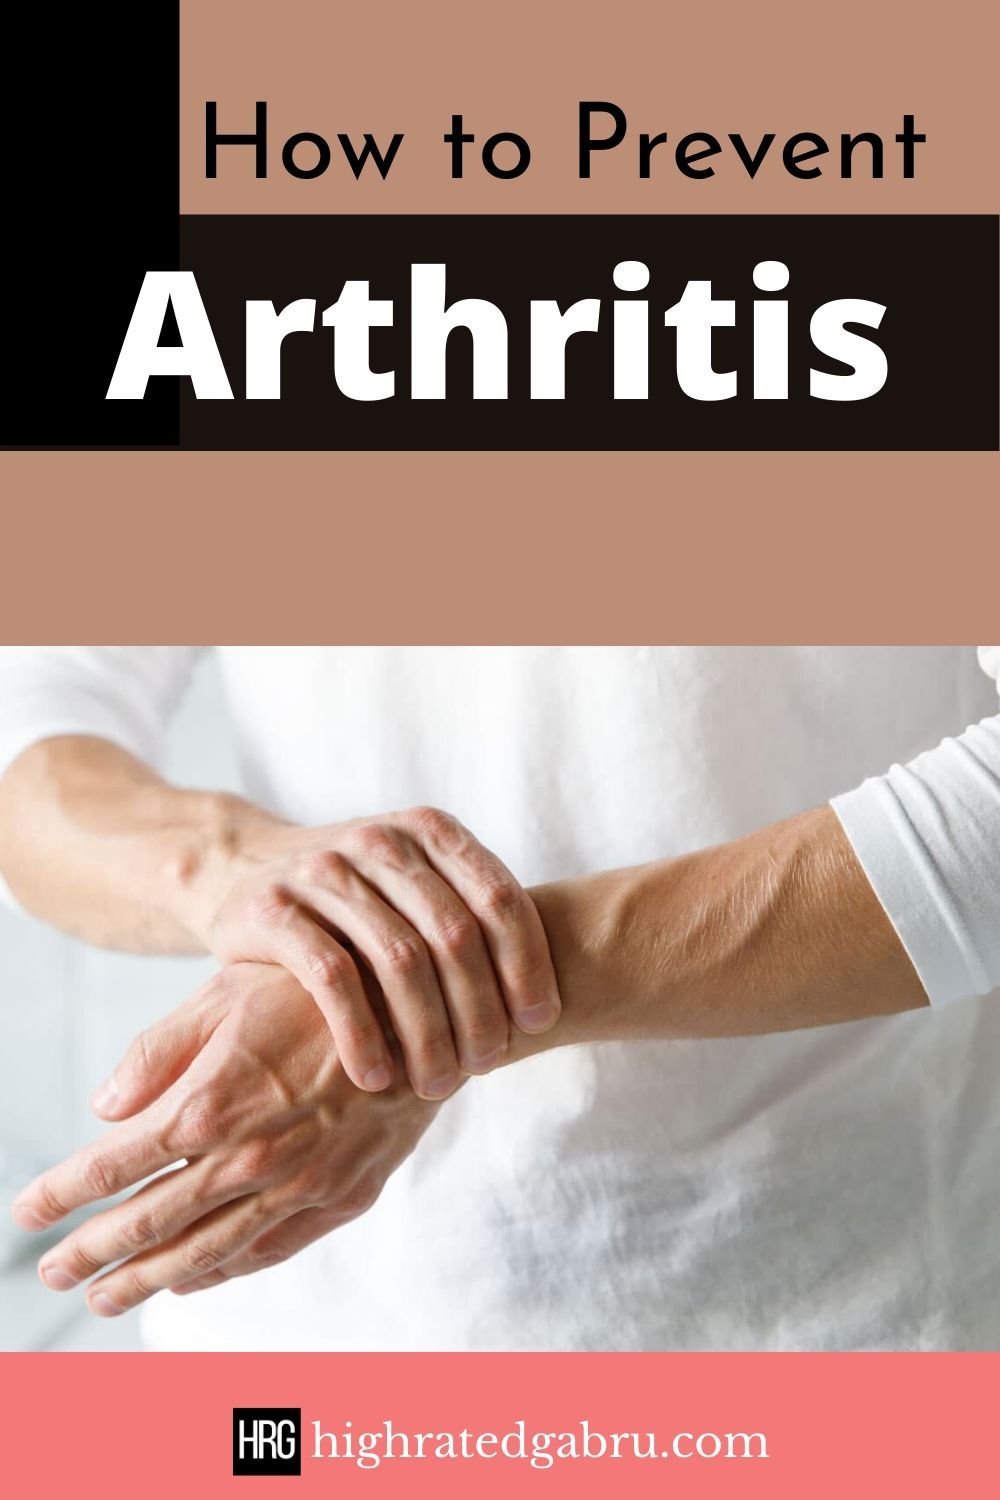 How Can I Prevent Arthritis?